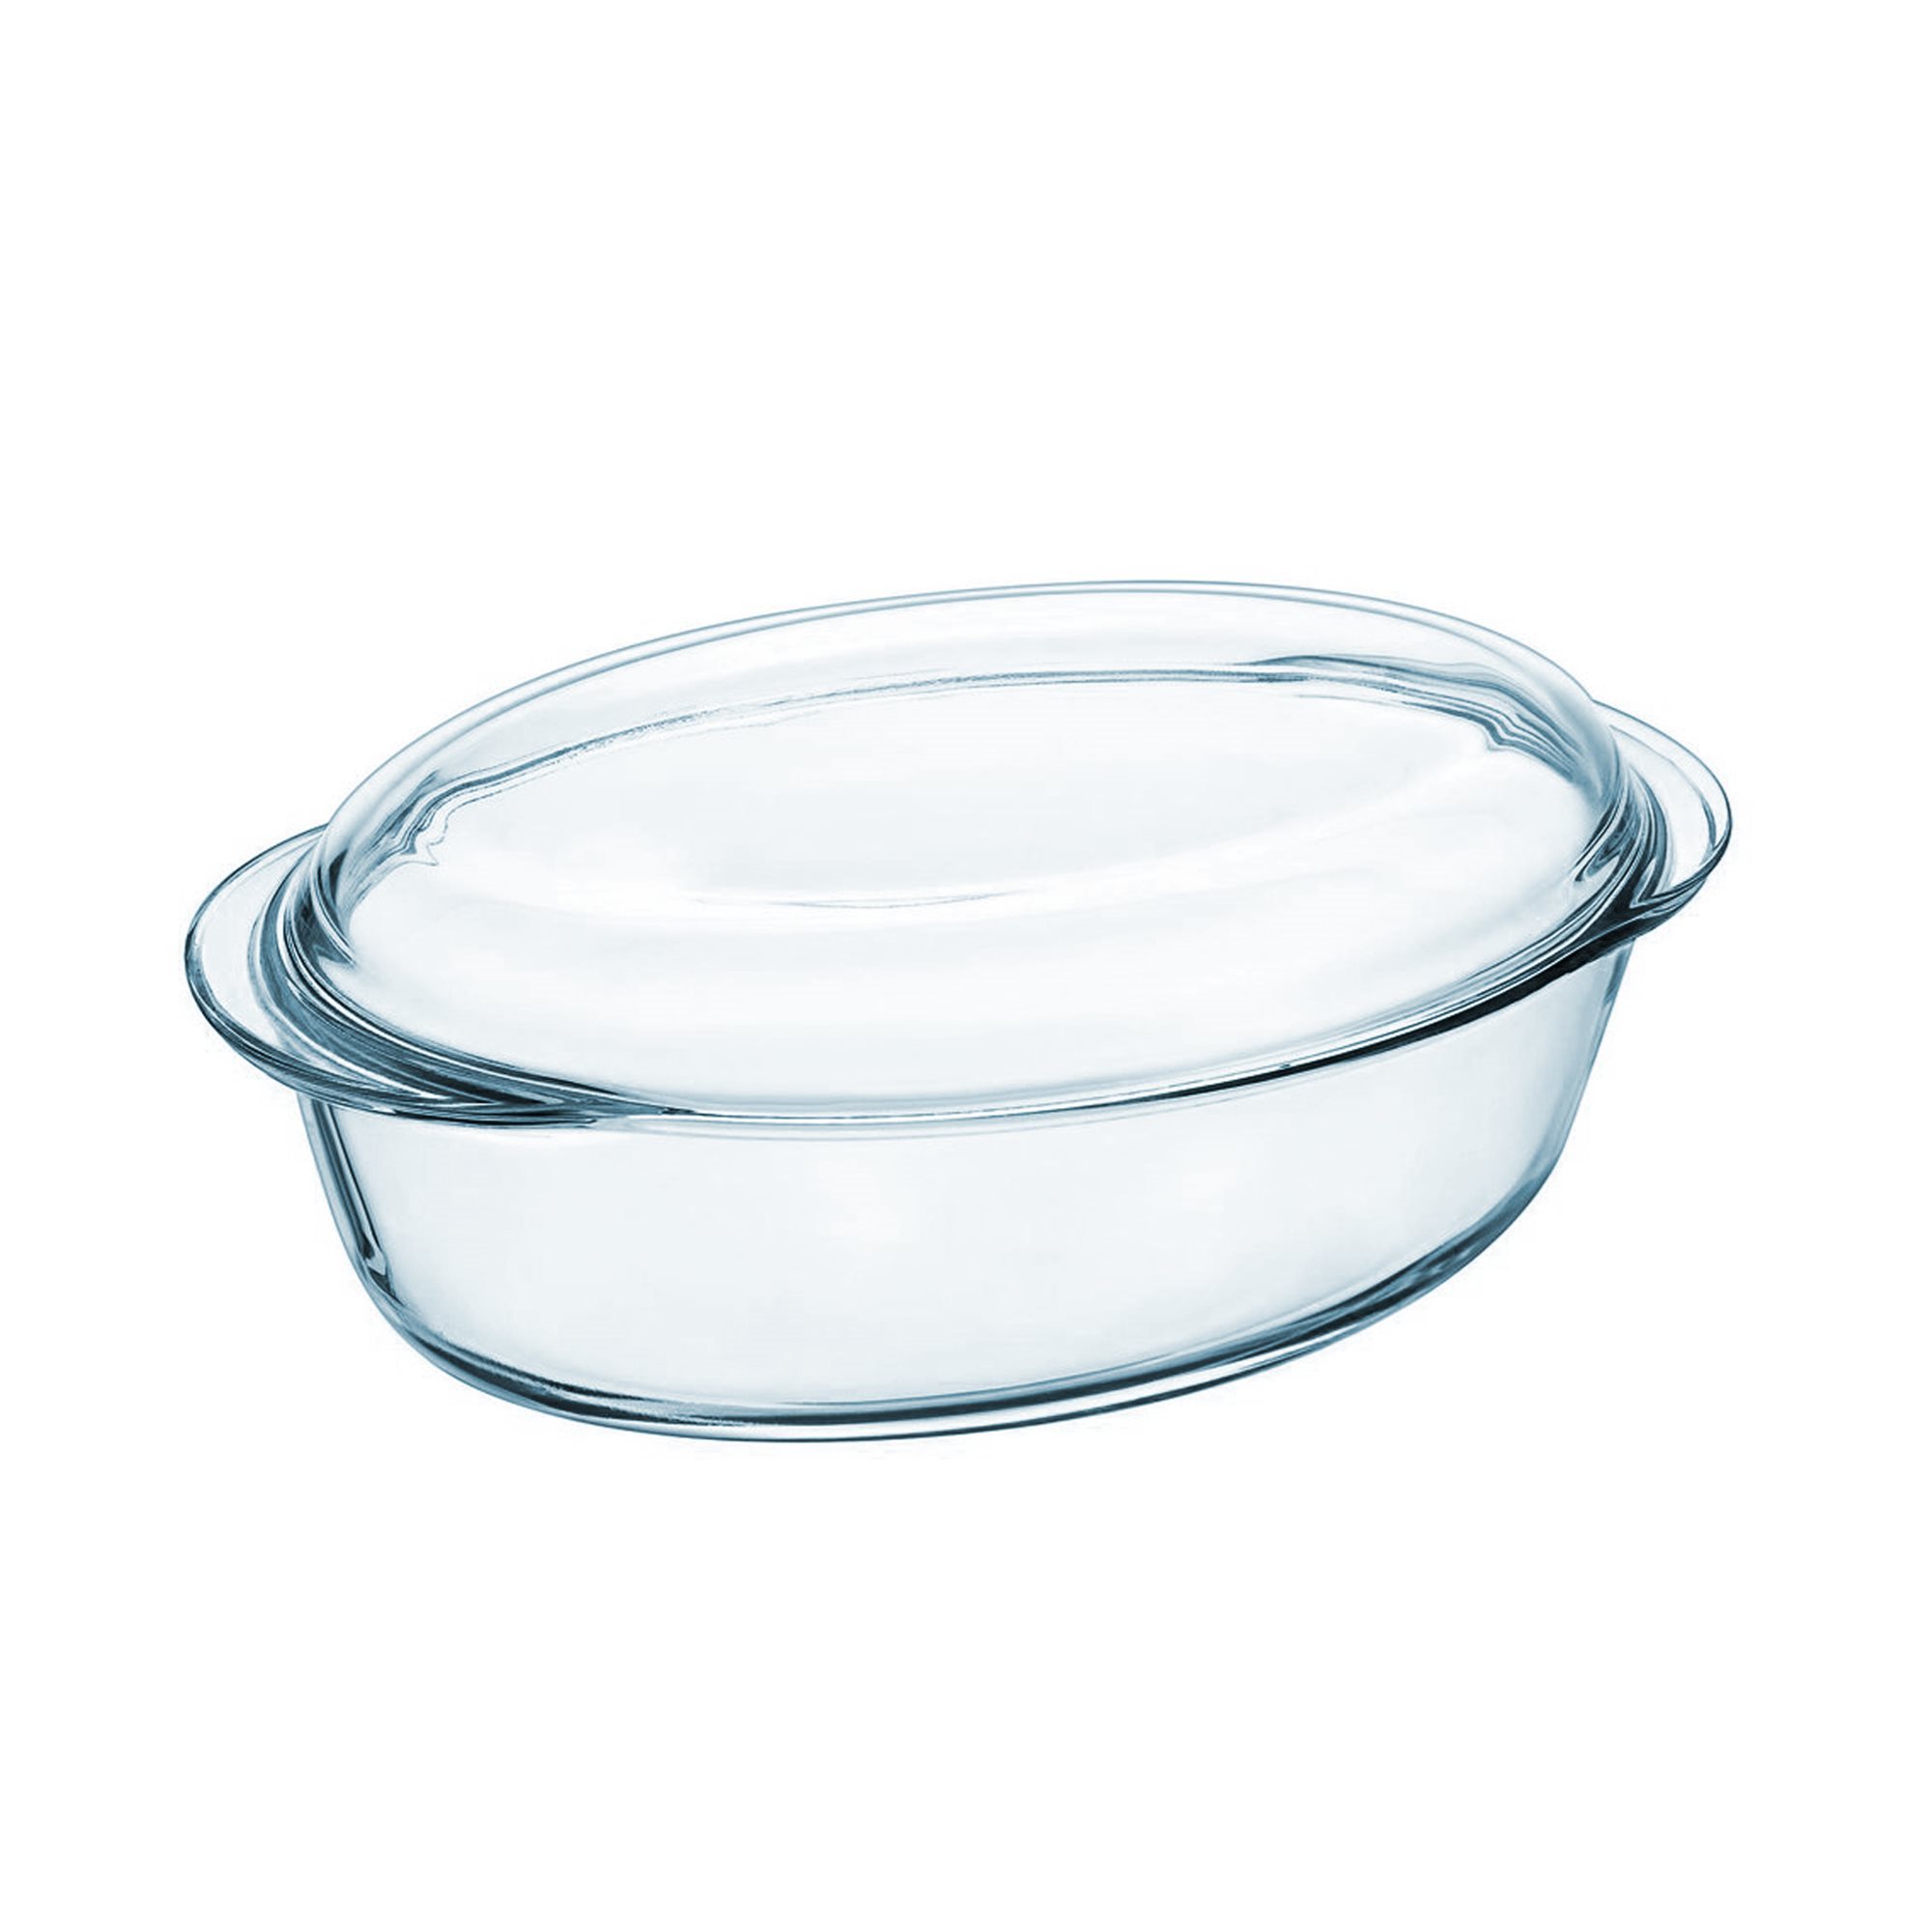 Juego de 3 fuentes redondas de vidrio 1,1 L con tapa hermética especia -  Tienda Online Pyrex®